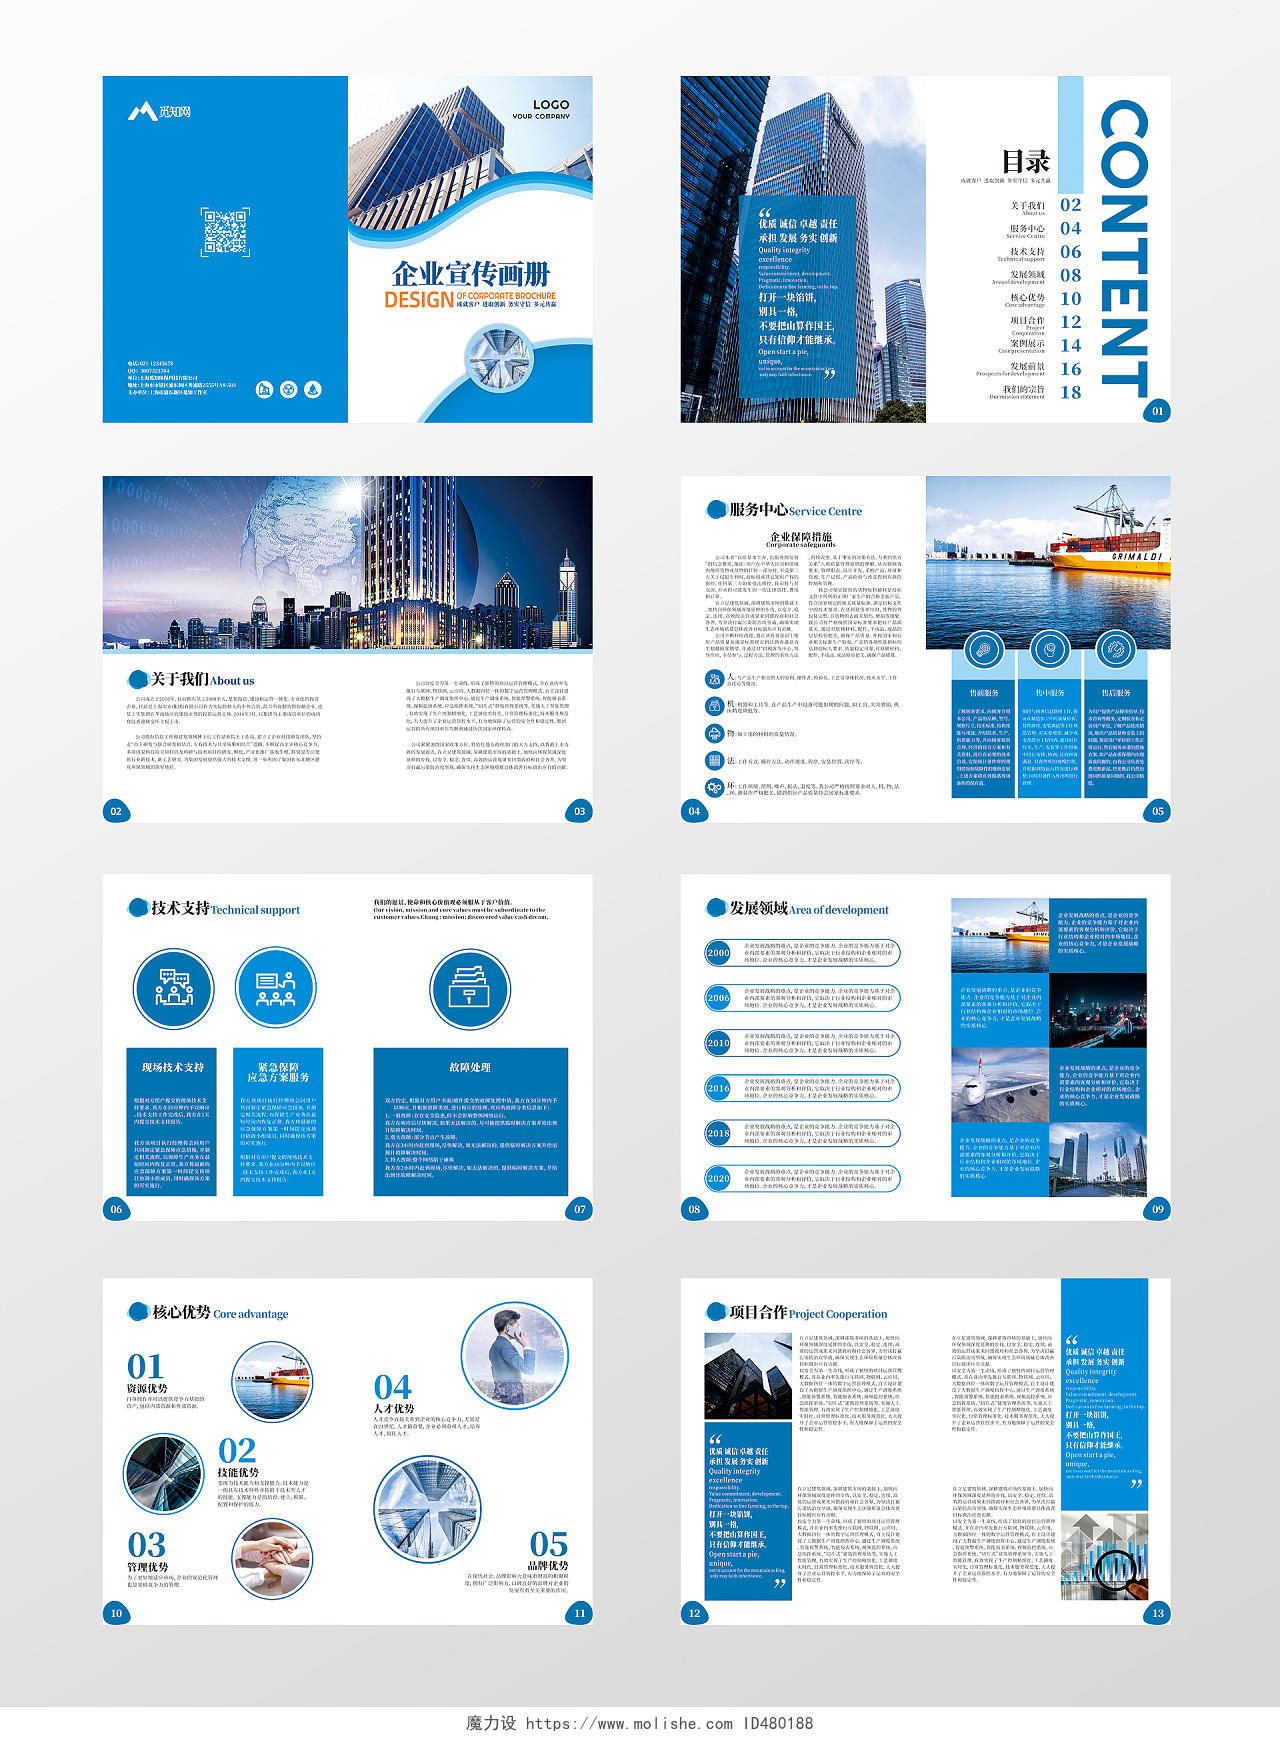 蓝色简洁大气几何创意公司企业宣传画册企业公司画册整套